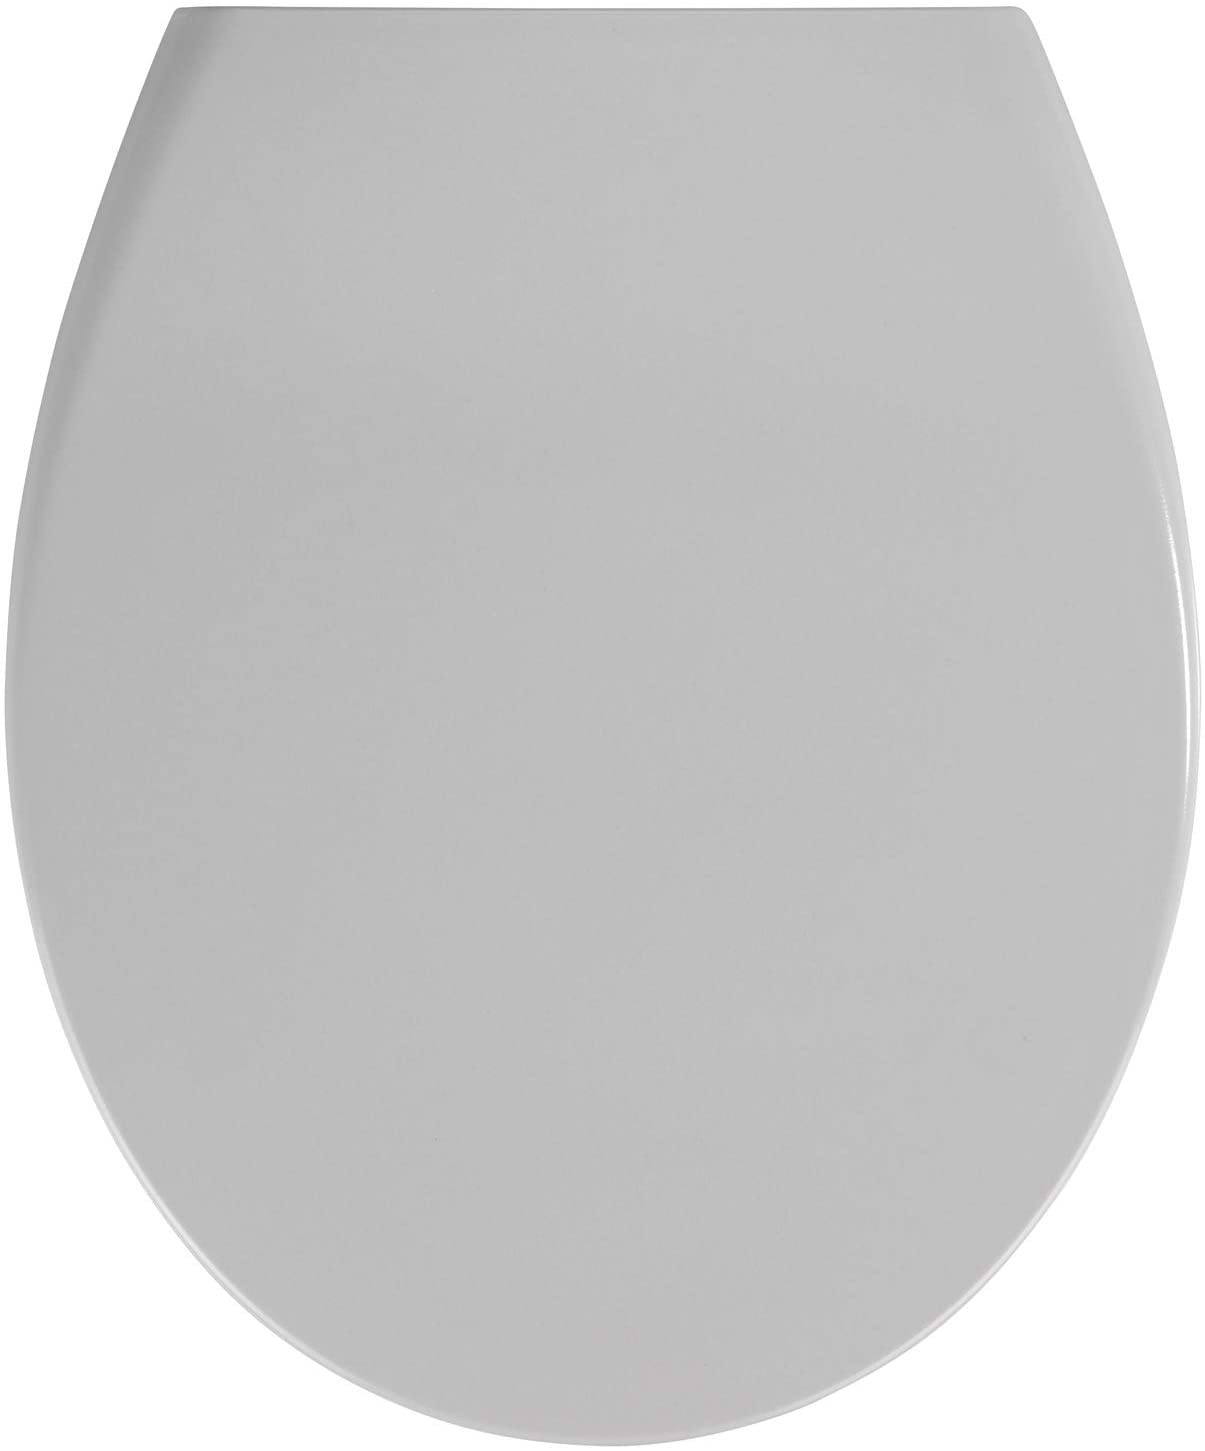 Premium WC-Sitz Samos Concrete Grey - Antibakterieller Toiletten-Sitz mit Absenkautomatik, rostfreie Fix-Clip Hygiene Edelstahlbefestigung, Duroplast, 37.5 x 44.5 cm, Hellgrau